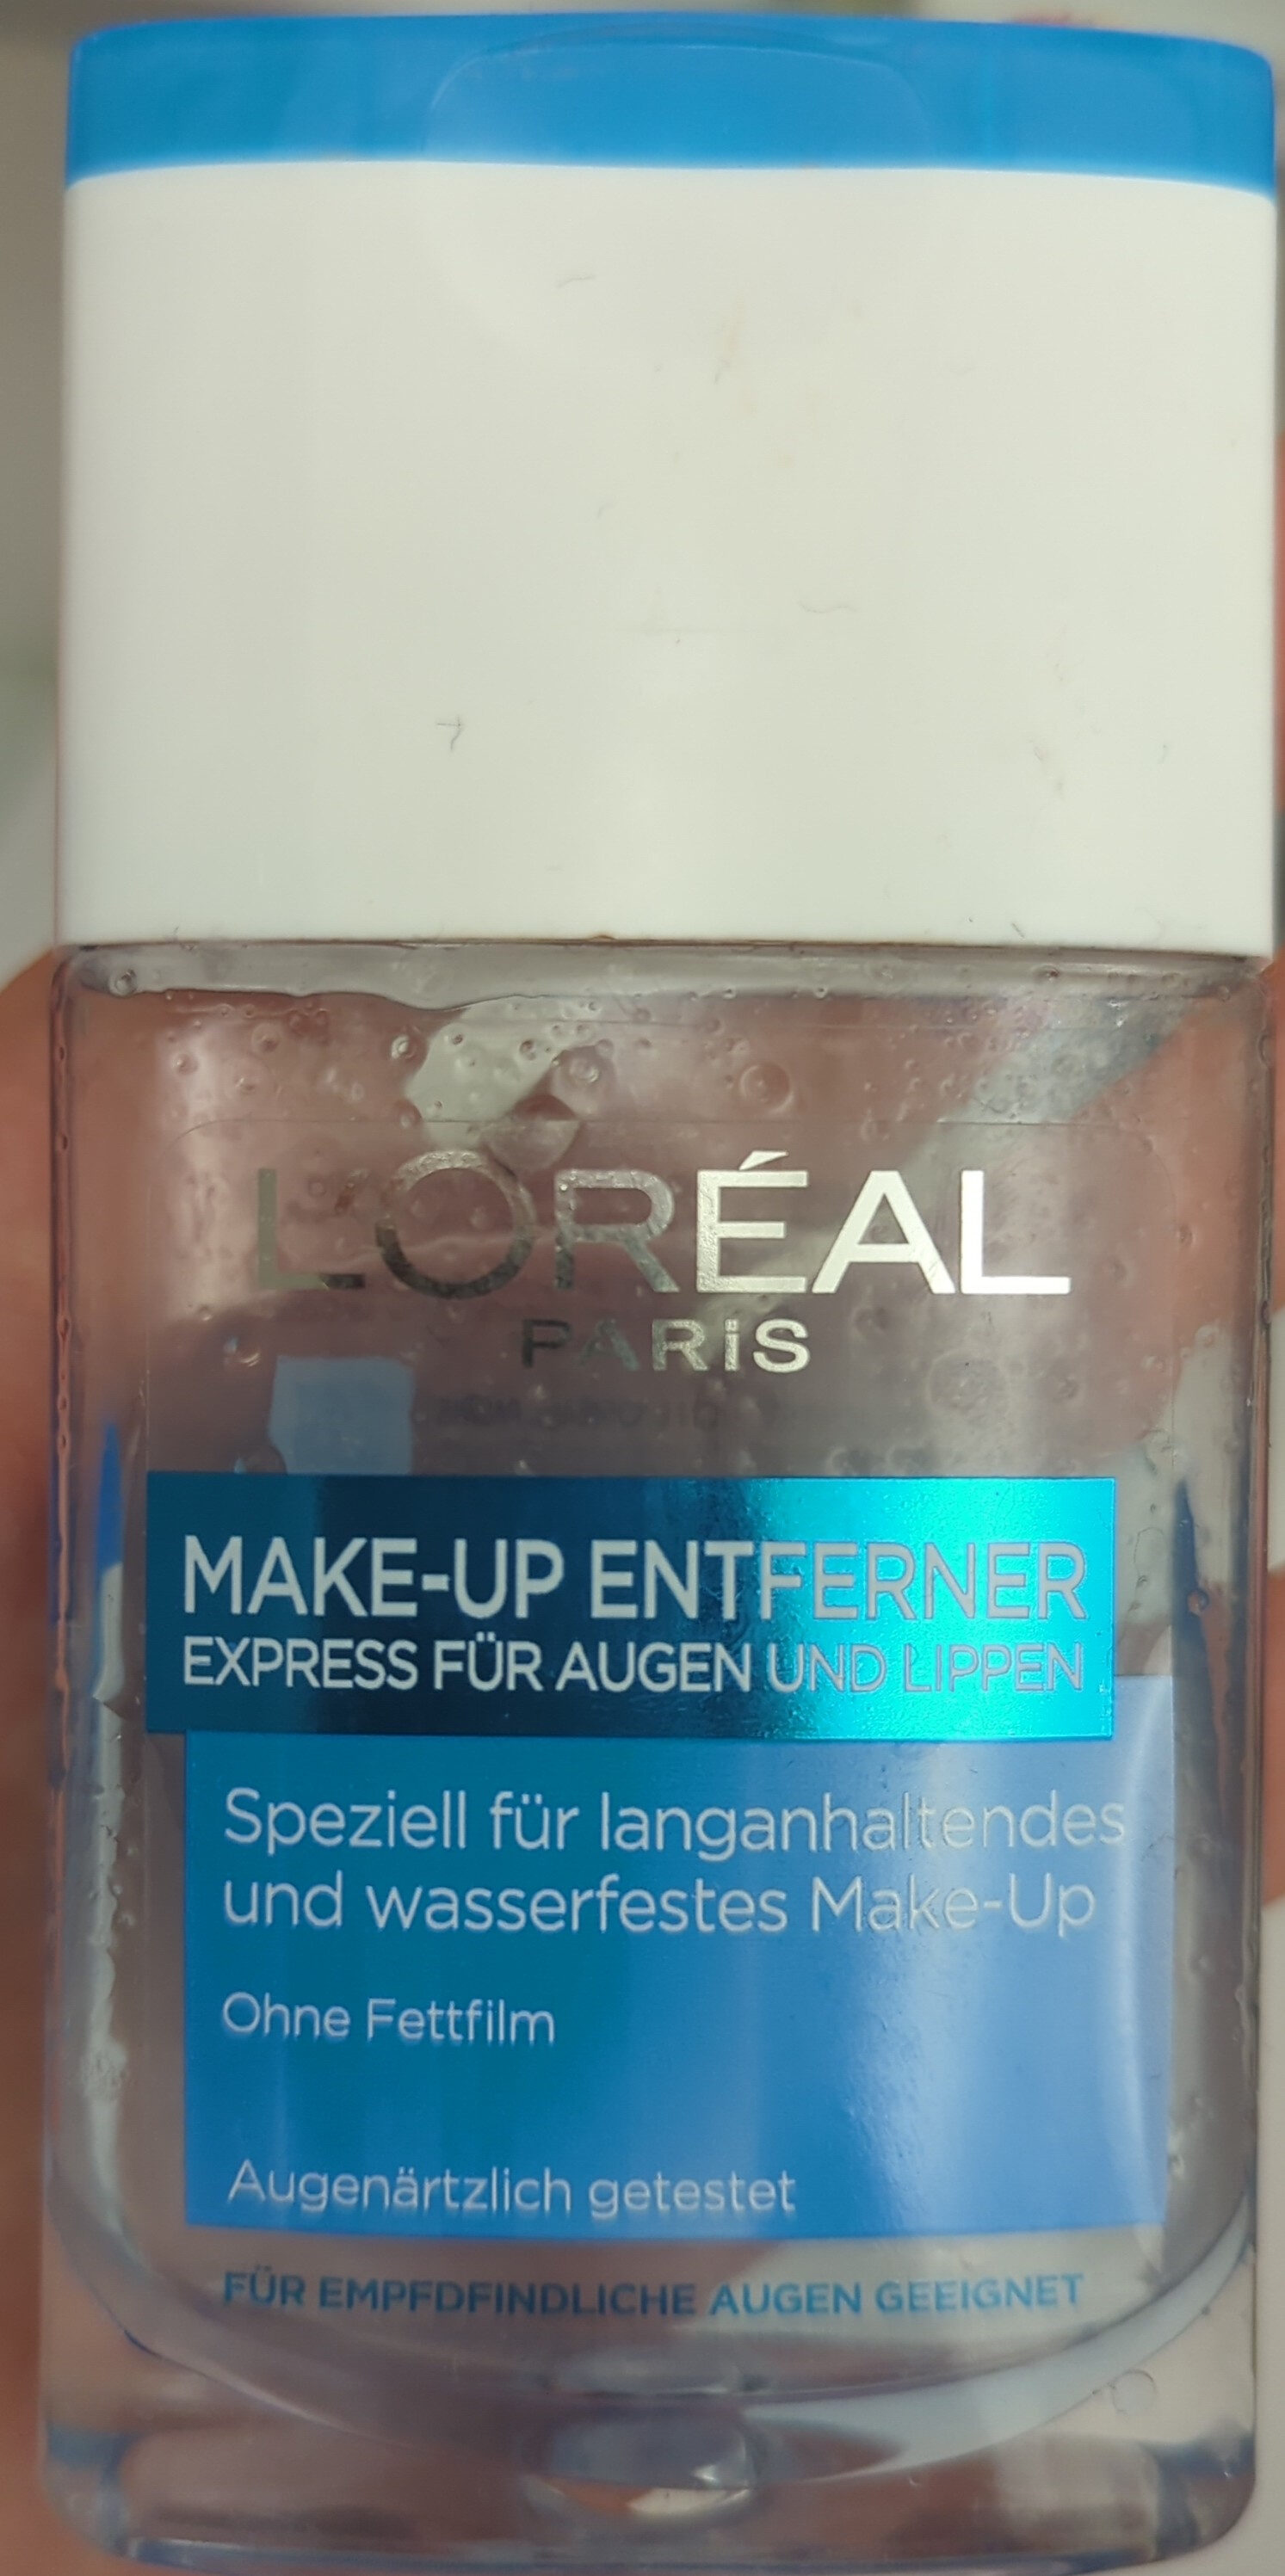 Make-up Entferner - Produkt - de